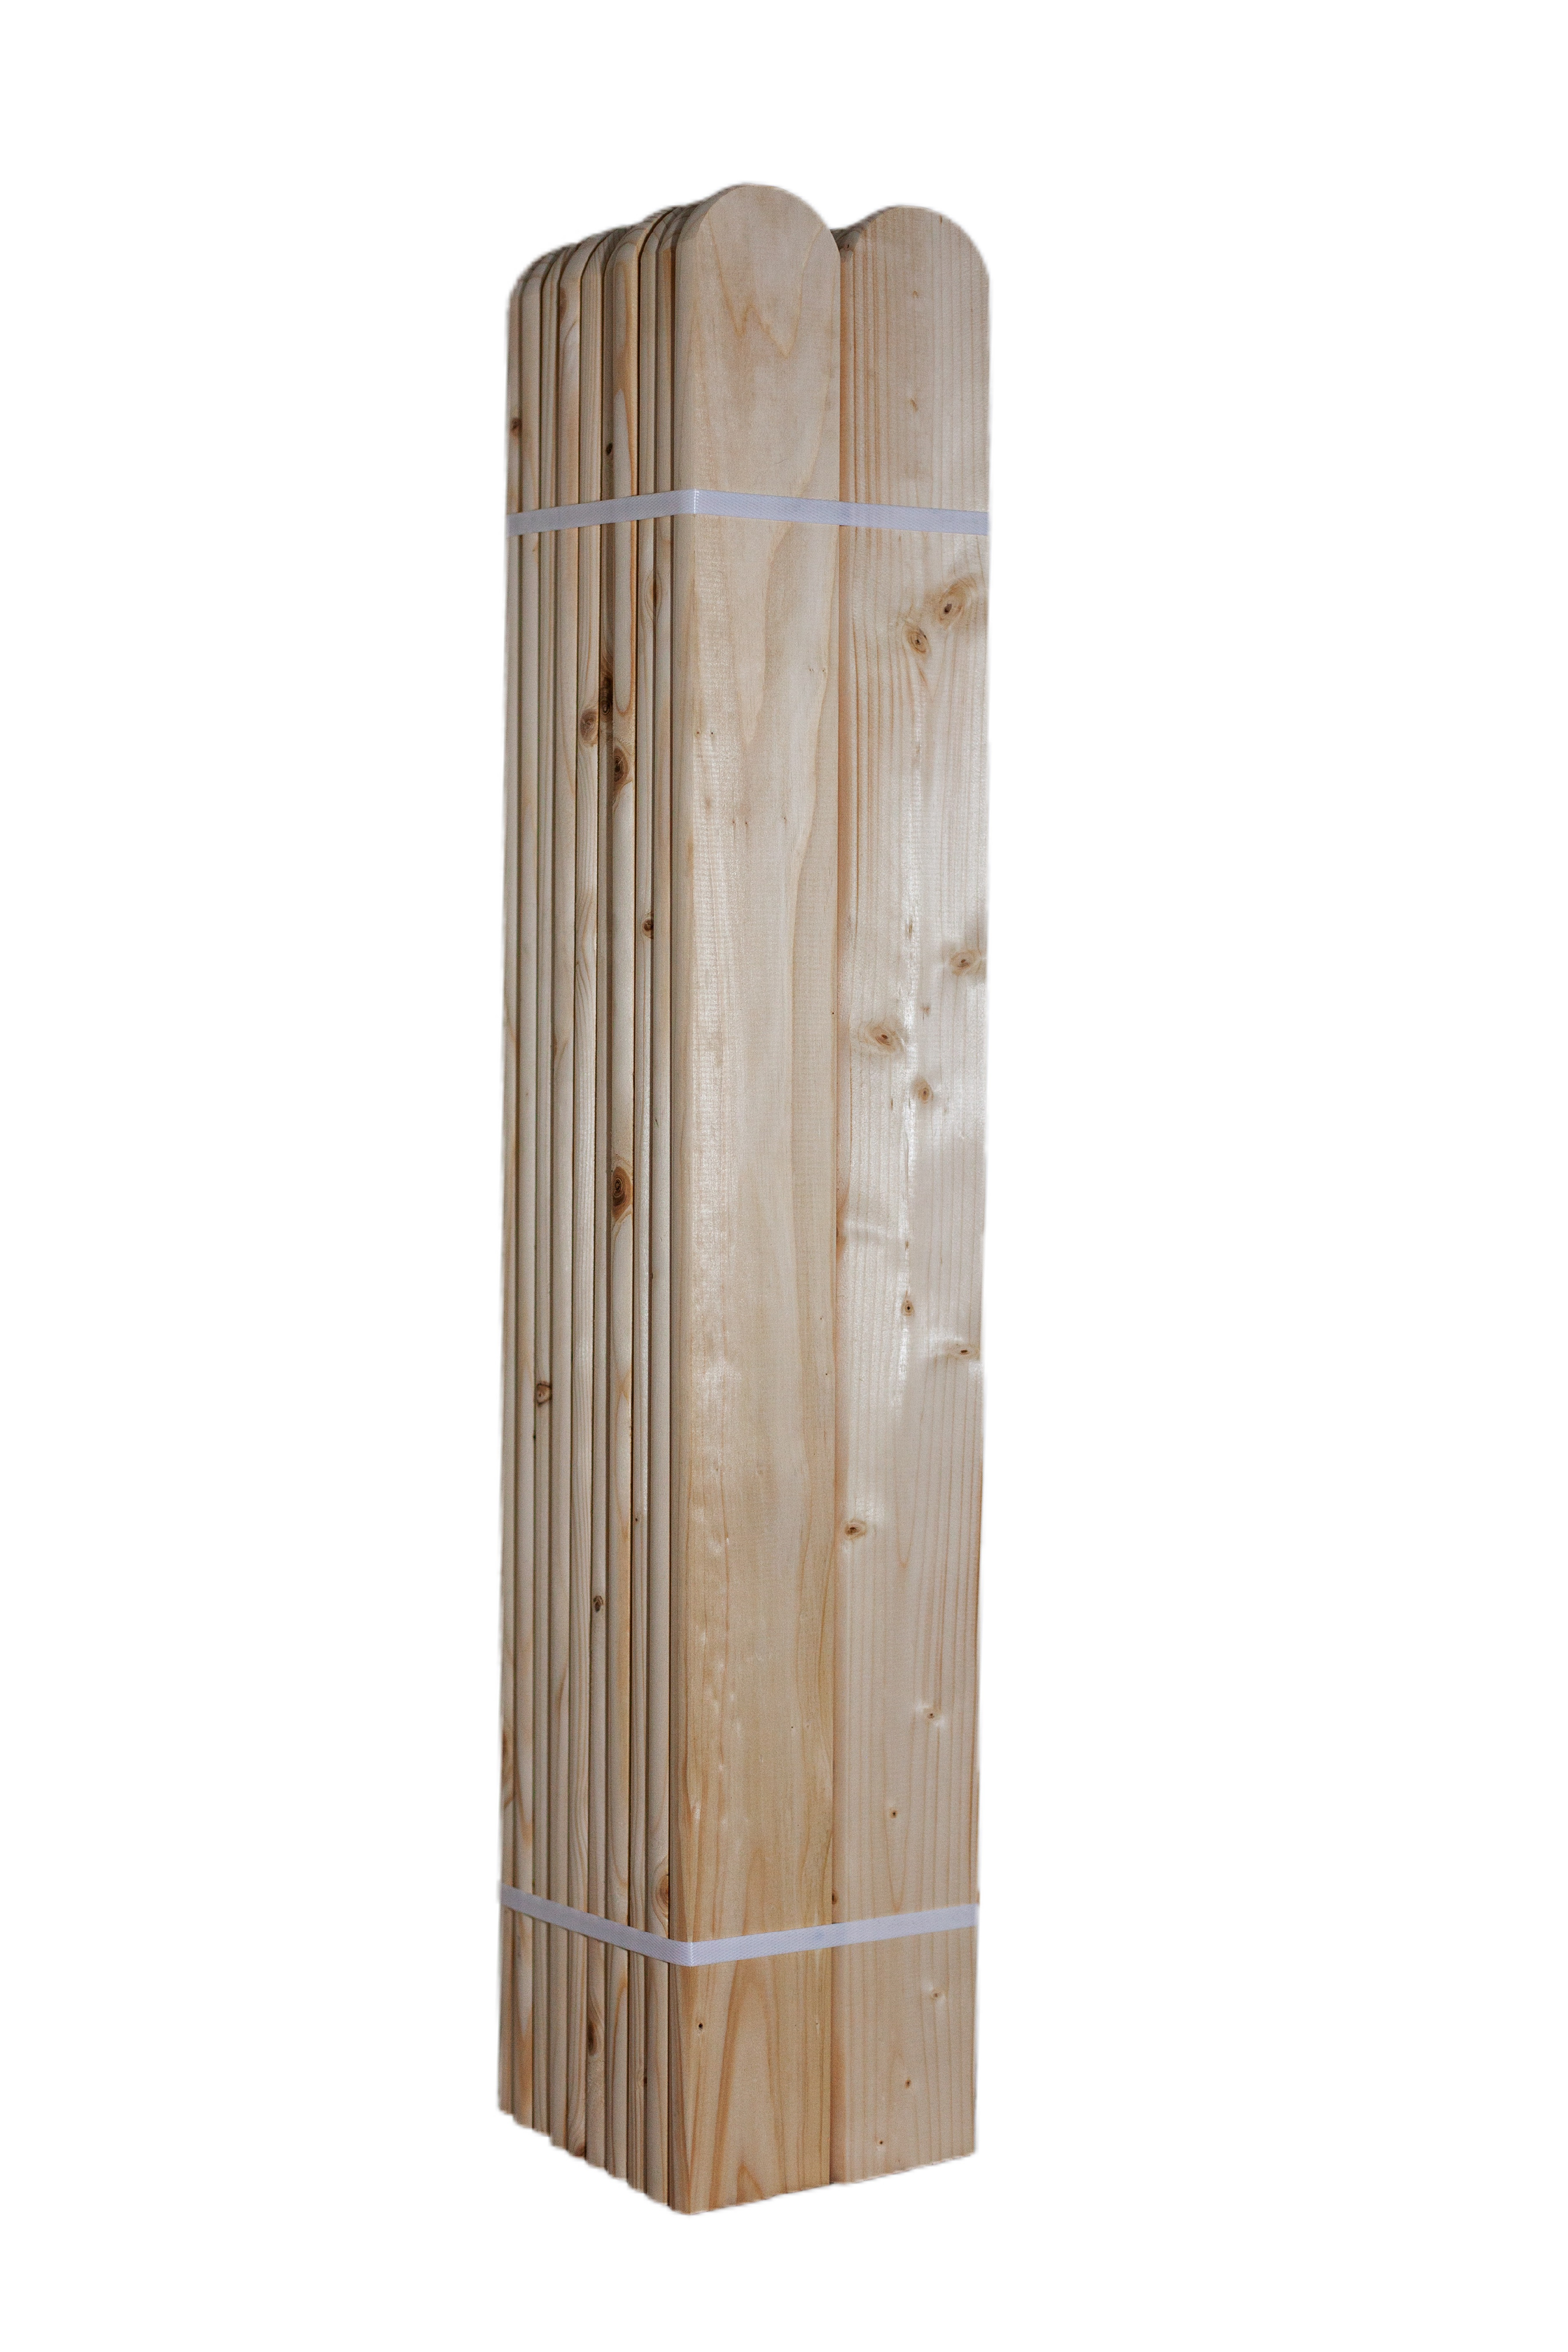 LC Dřevěná smrková plotovka, 20 x 90 mm zakulacená 1ks Výška plotovek: 60 cm